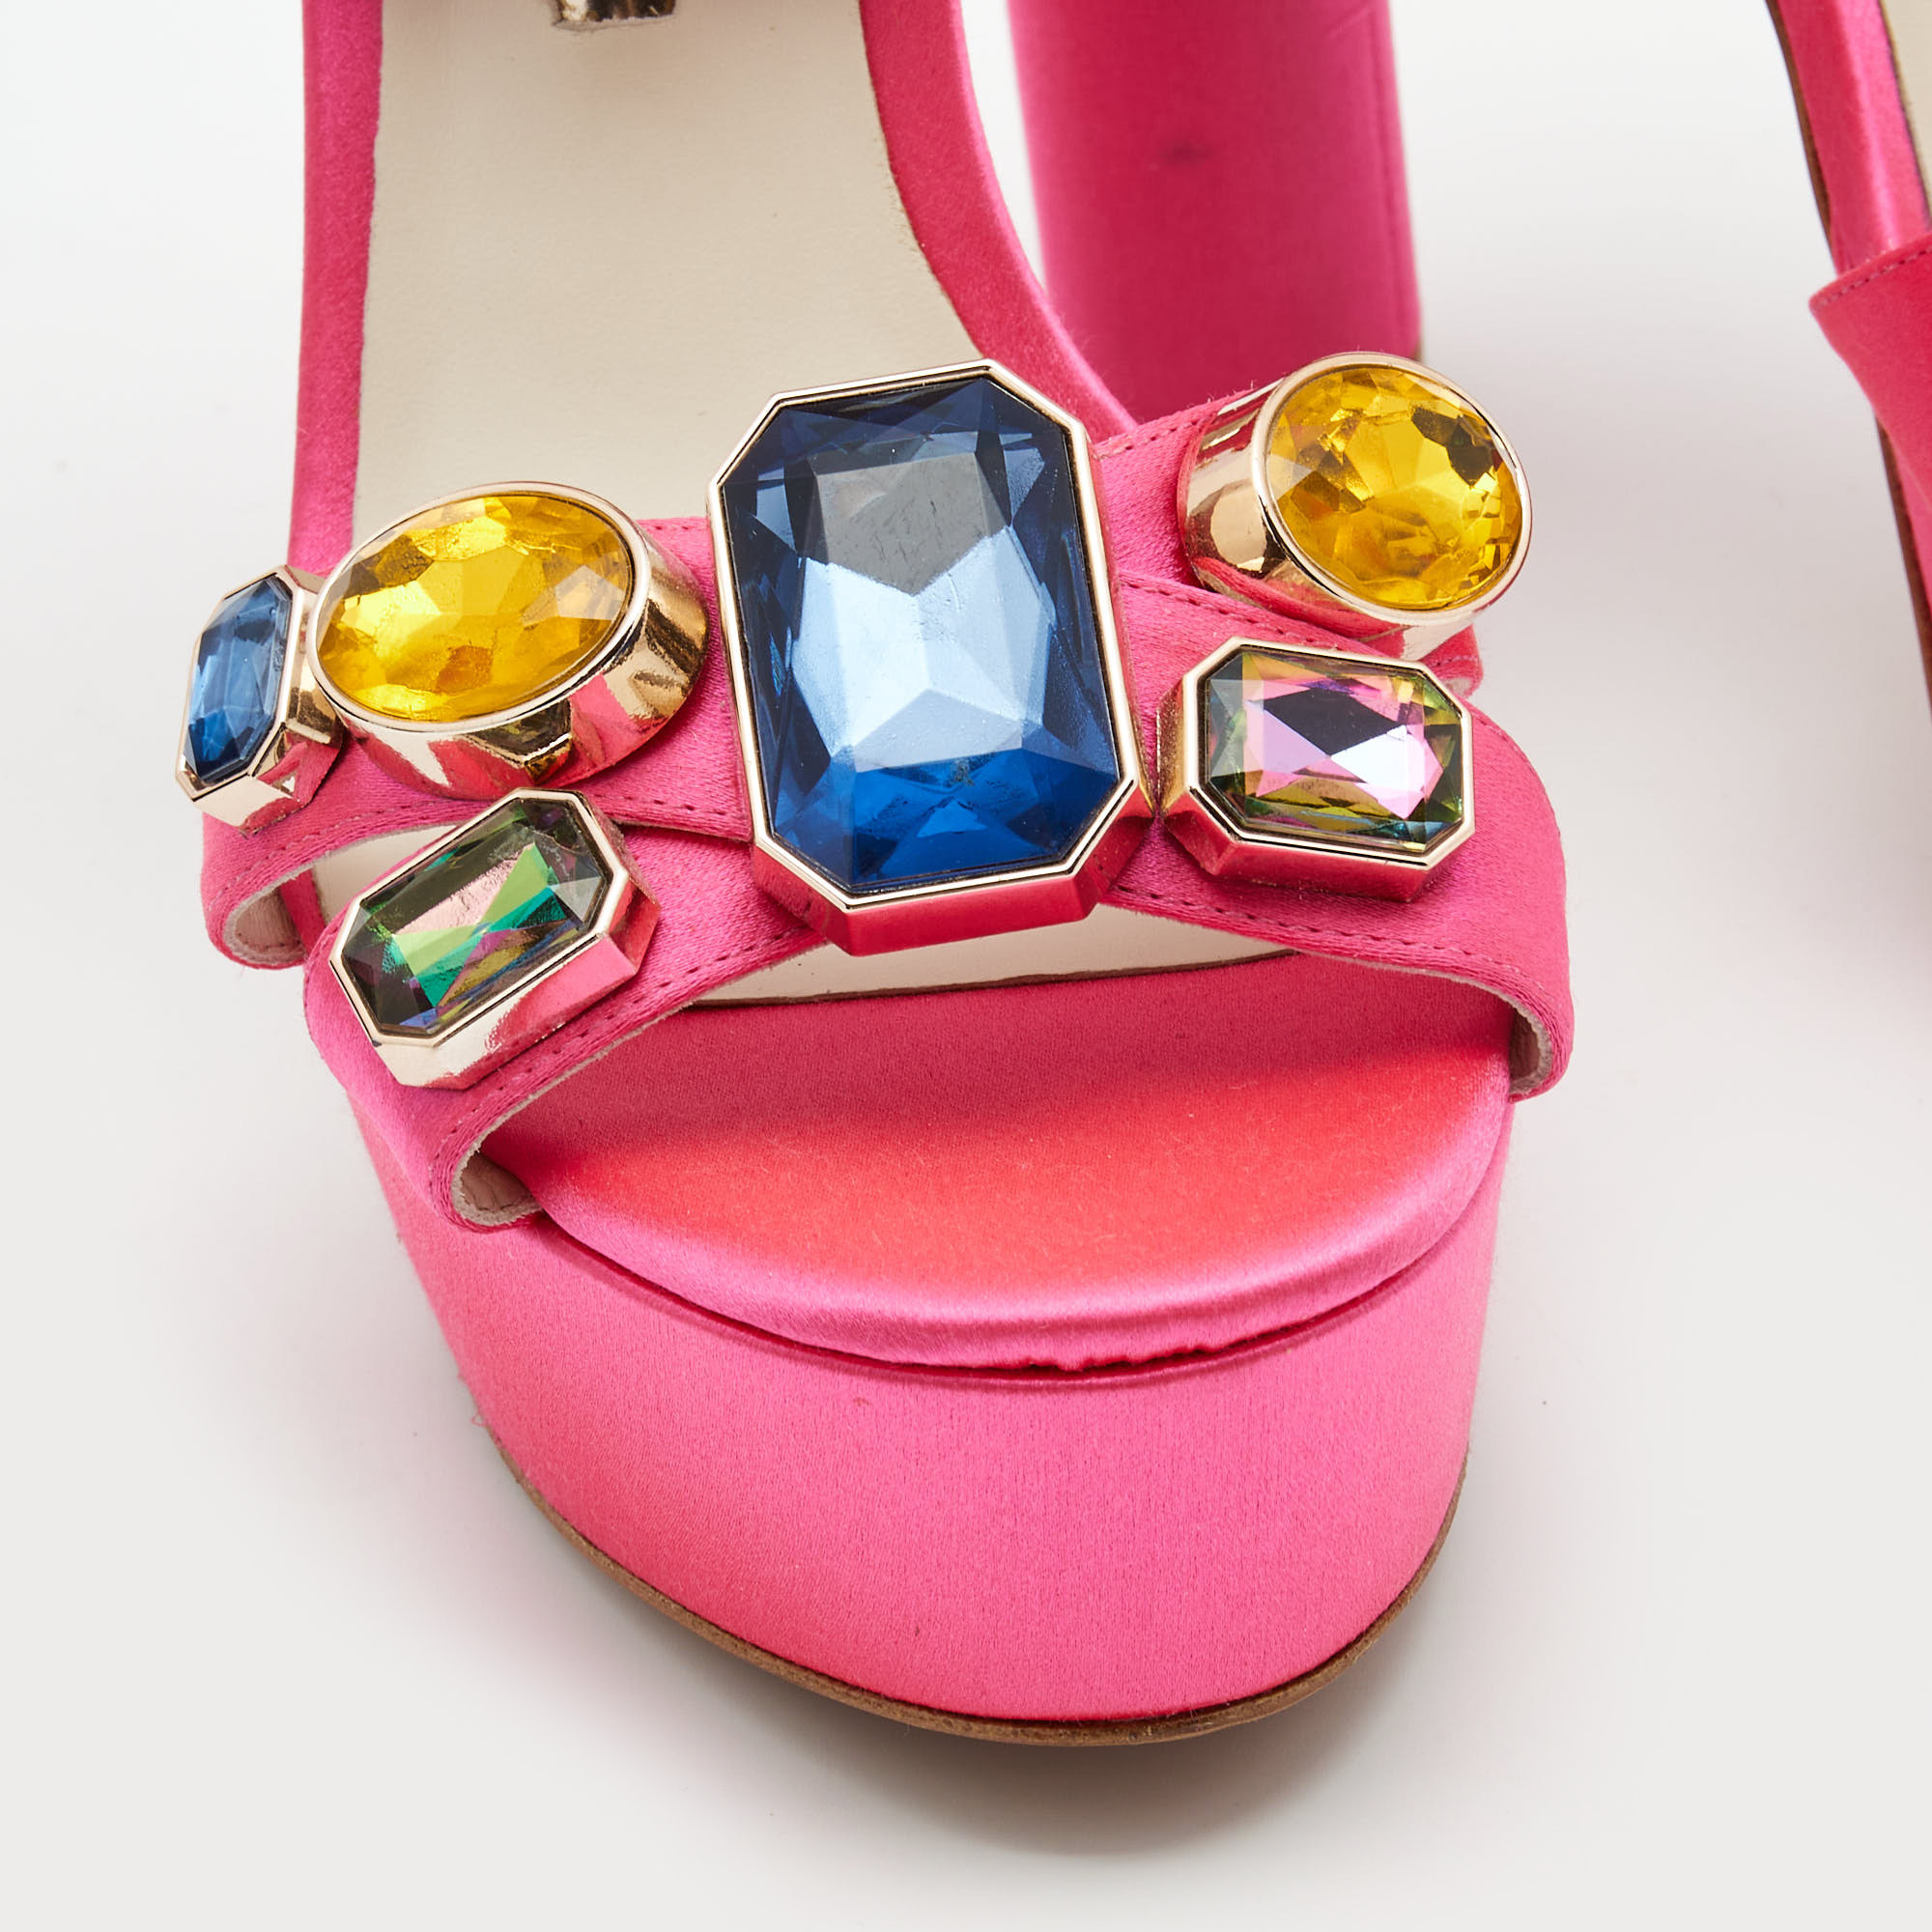 Sophia Webster Pink Satin Crystal Embellished Amanda Sandals Size 39